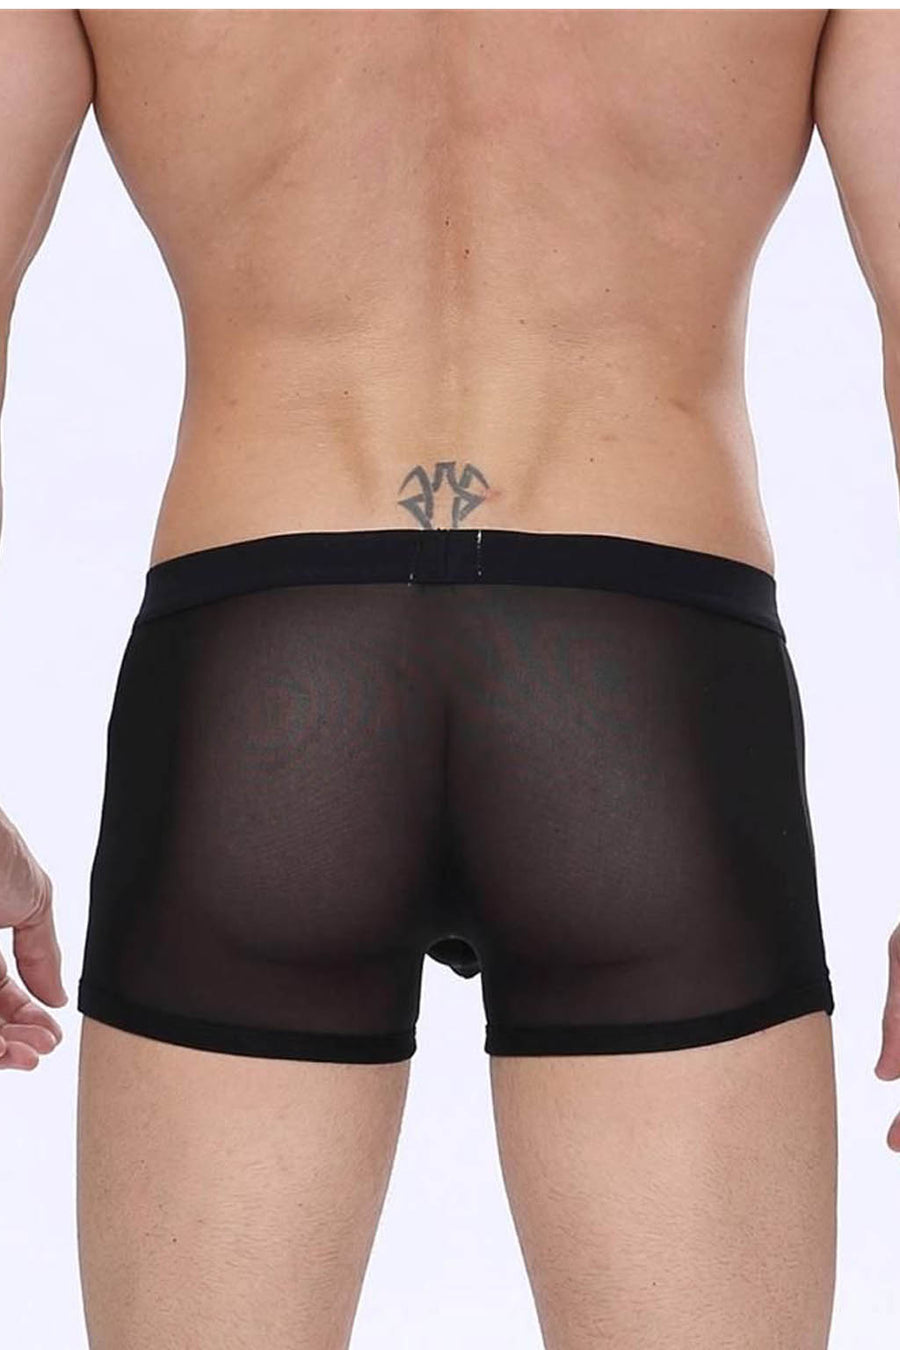 Manview Mens Sheer Net Boxer Lowrise Pouch Underwear – Bodywear for Men